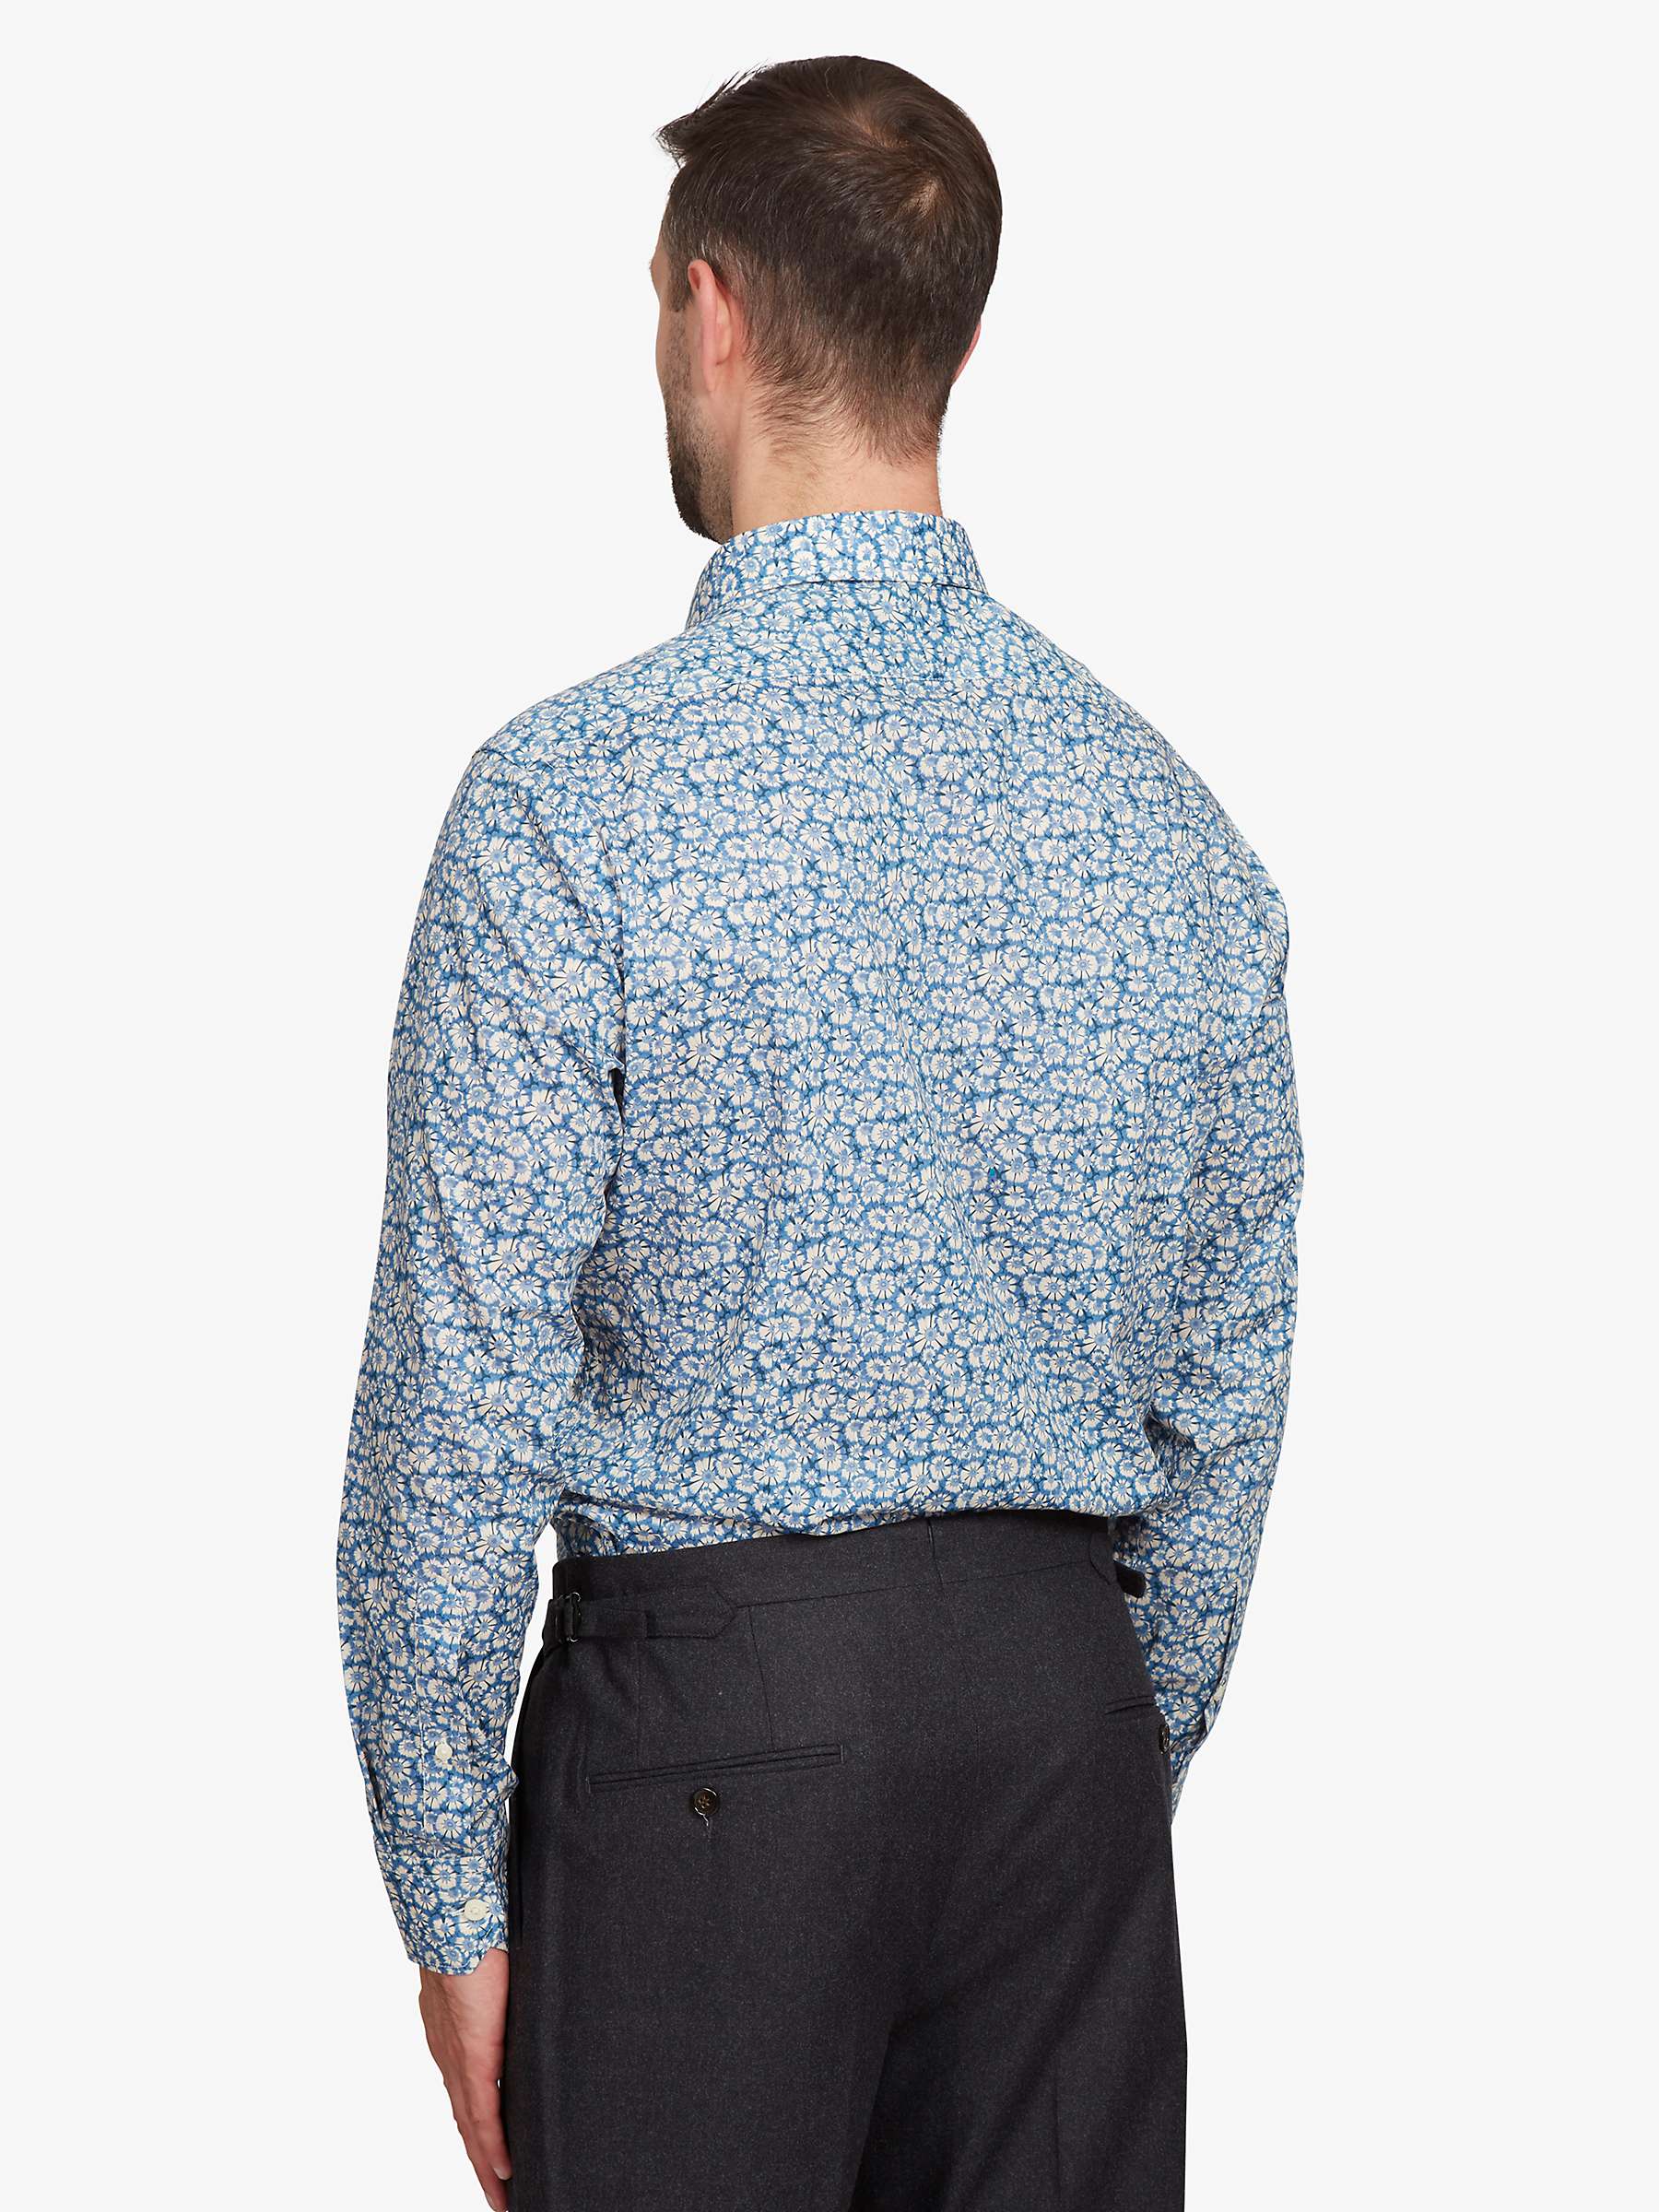 Buy Simon Carter Helenium Shirt, Blue/Multi Online at johnlewis.com